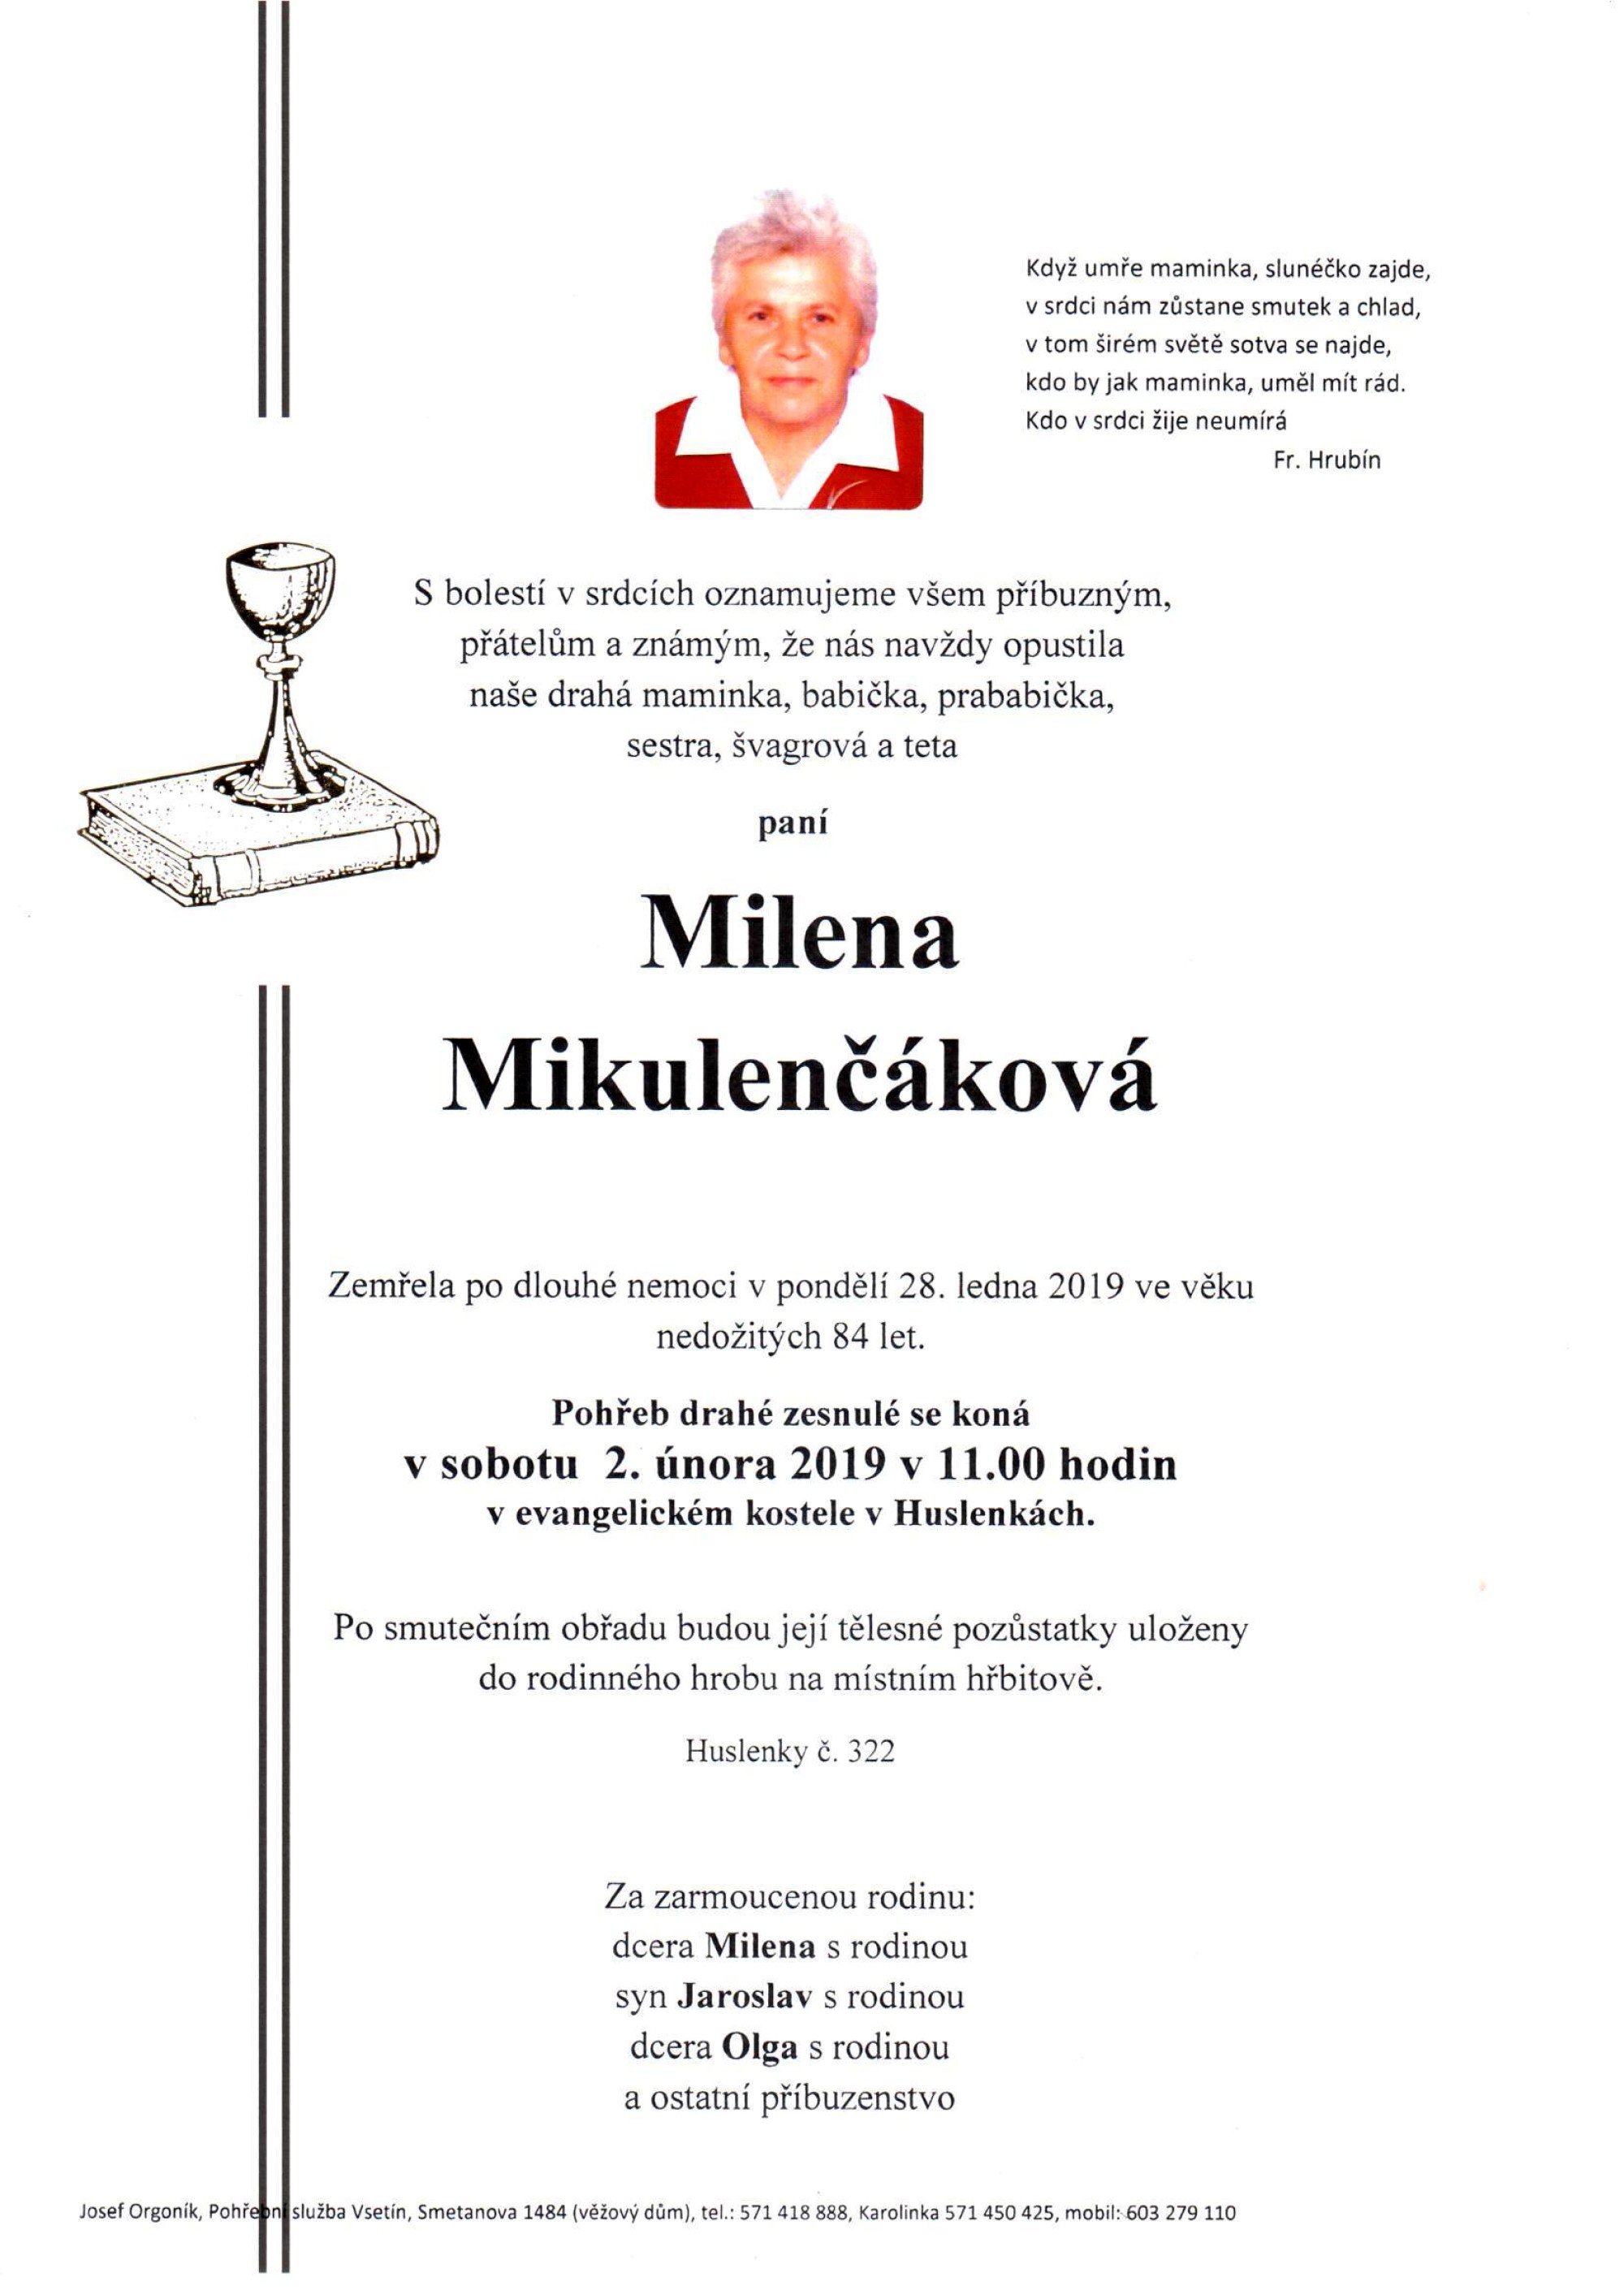 Milena Mikulenčáková